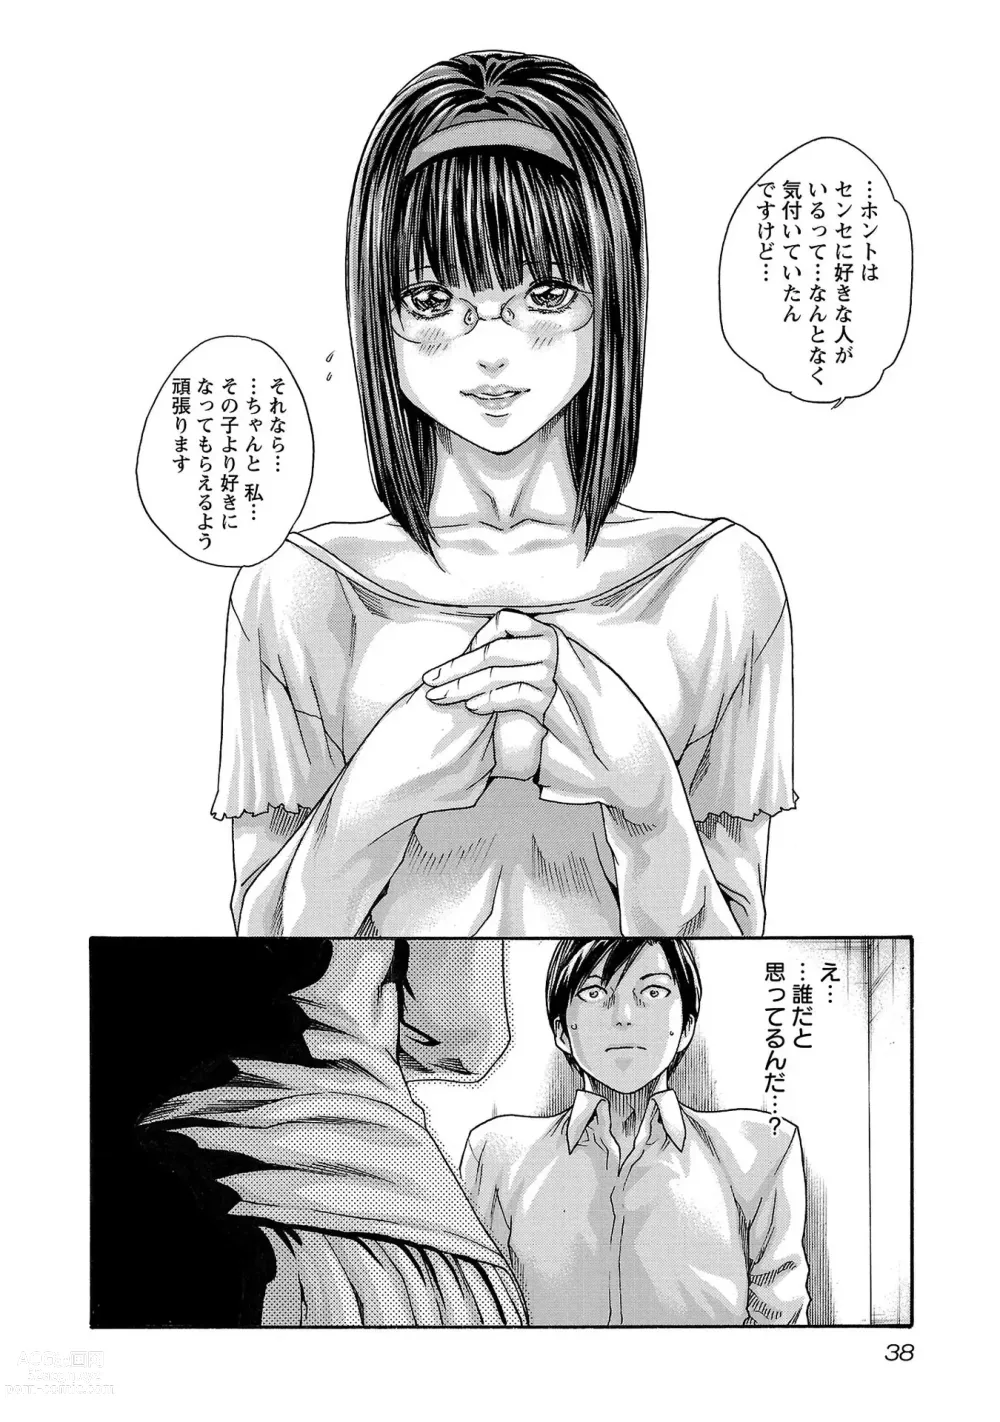 Page 39 of manga sense volume 13